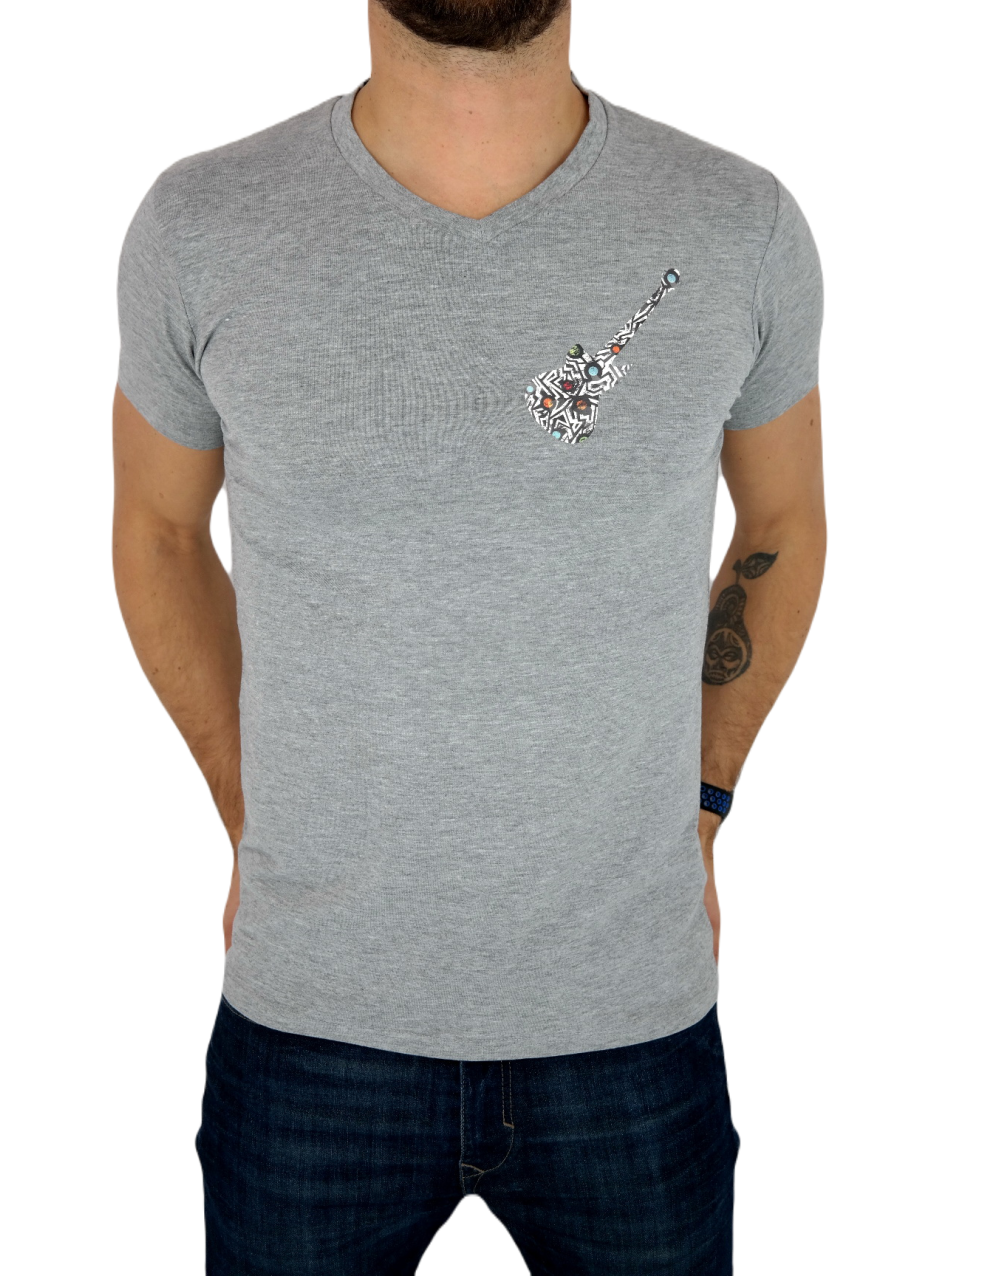 GIOVANNI PERA T-shirt męski biały TGP94 w szpic, serek , gritara, elastan